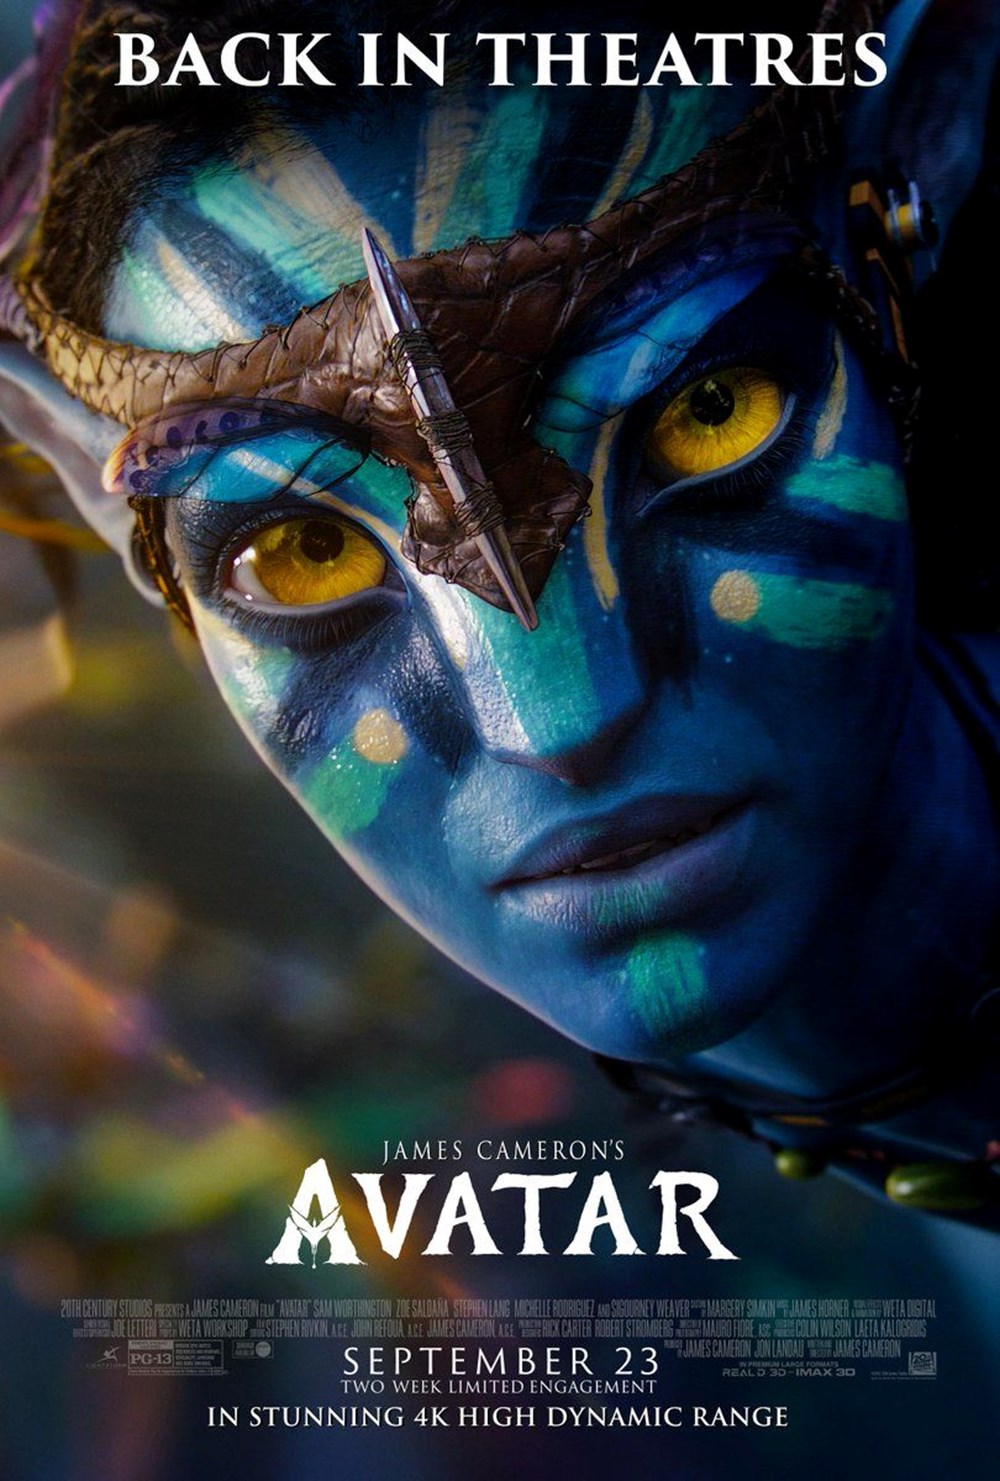 Avatar yeniden gösterimiyle 30 milyon dolar daha kazandı (ABD gişe rakamları) - 8